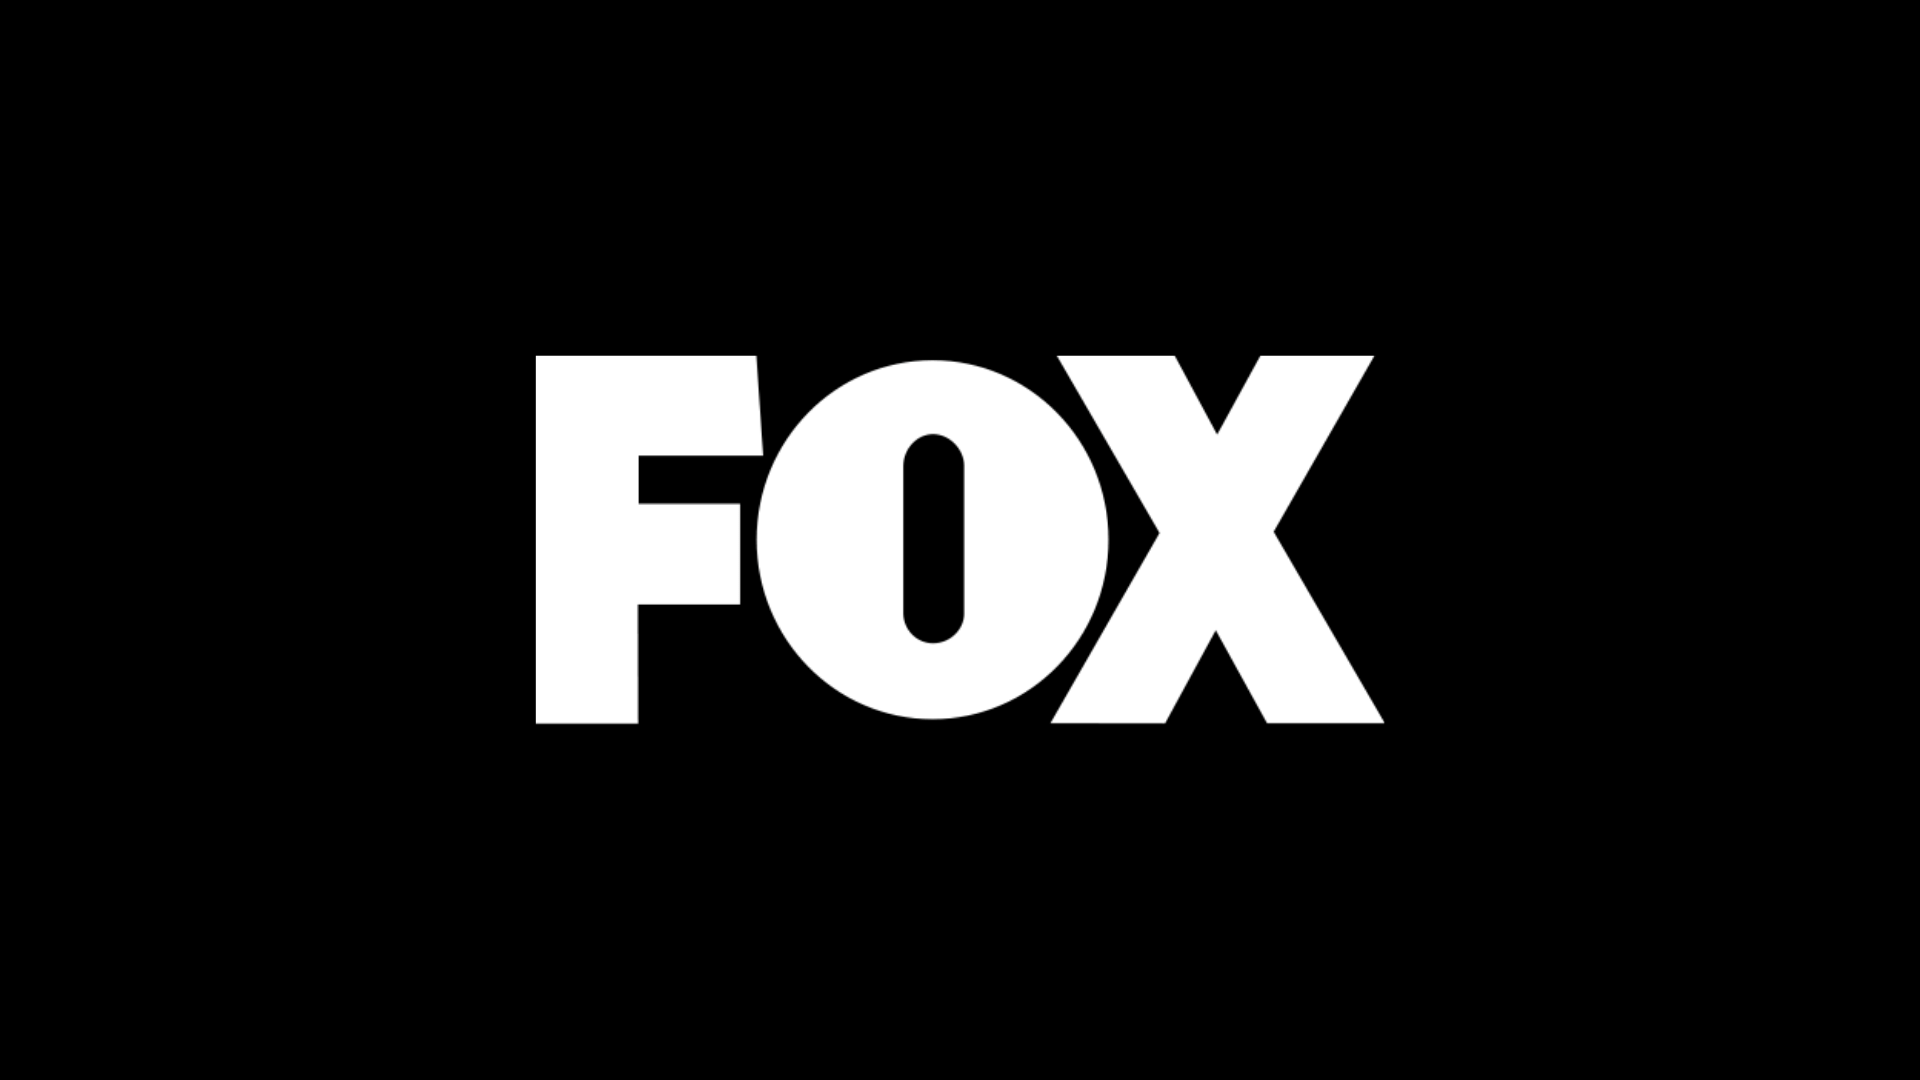 Fox ao vivo,Fox online,assistir Fox,assistir Fox ao vivo,assistir Fox online,Fox gratis,assistir Fox gratis,ao vivo online,ao vivo gratis,ver Fox,ver Fox ao vivo,ver Fox online,24 horas,24h,multicanais,piratetv,piratatvs.com